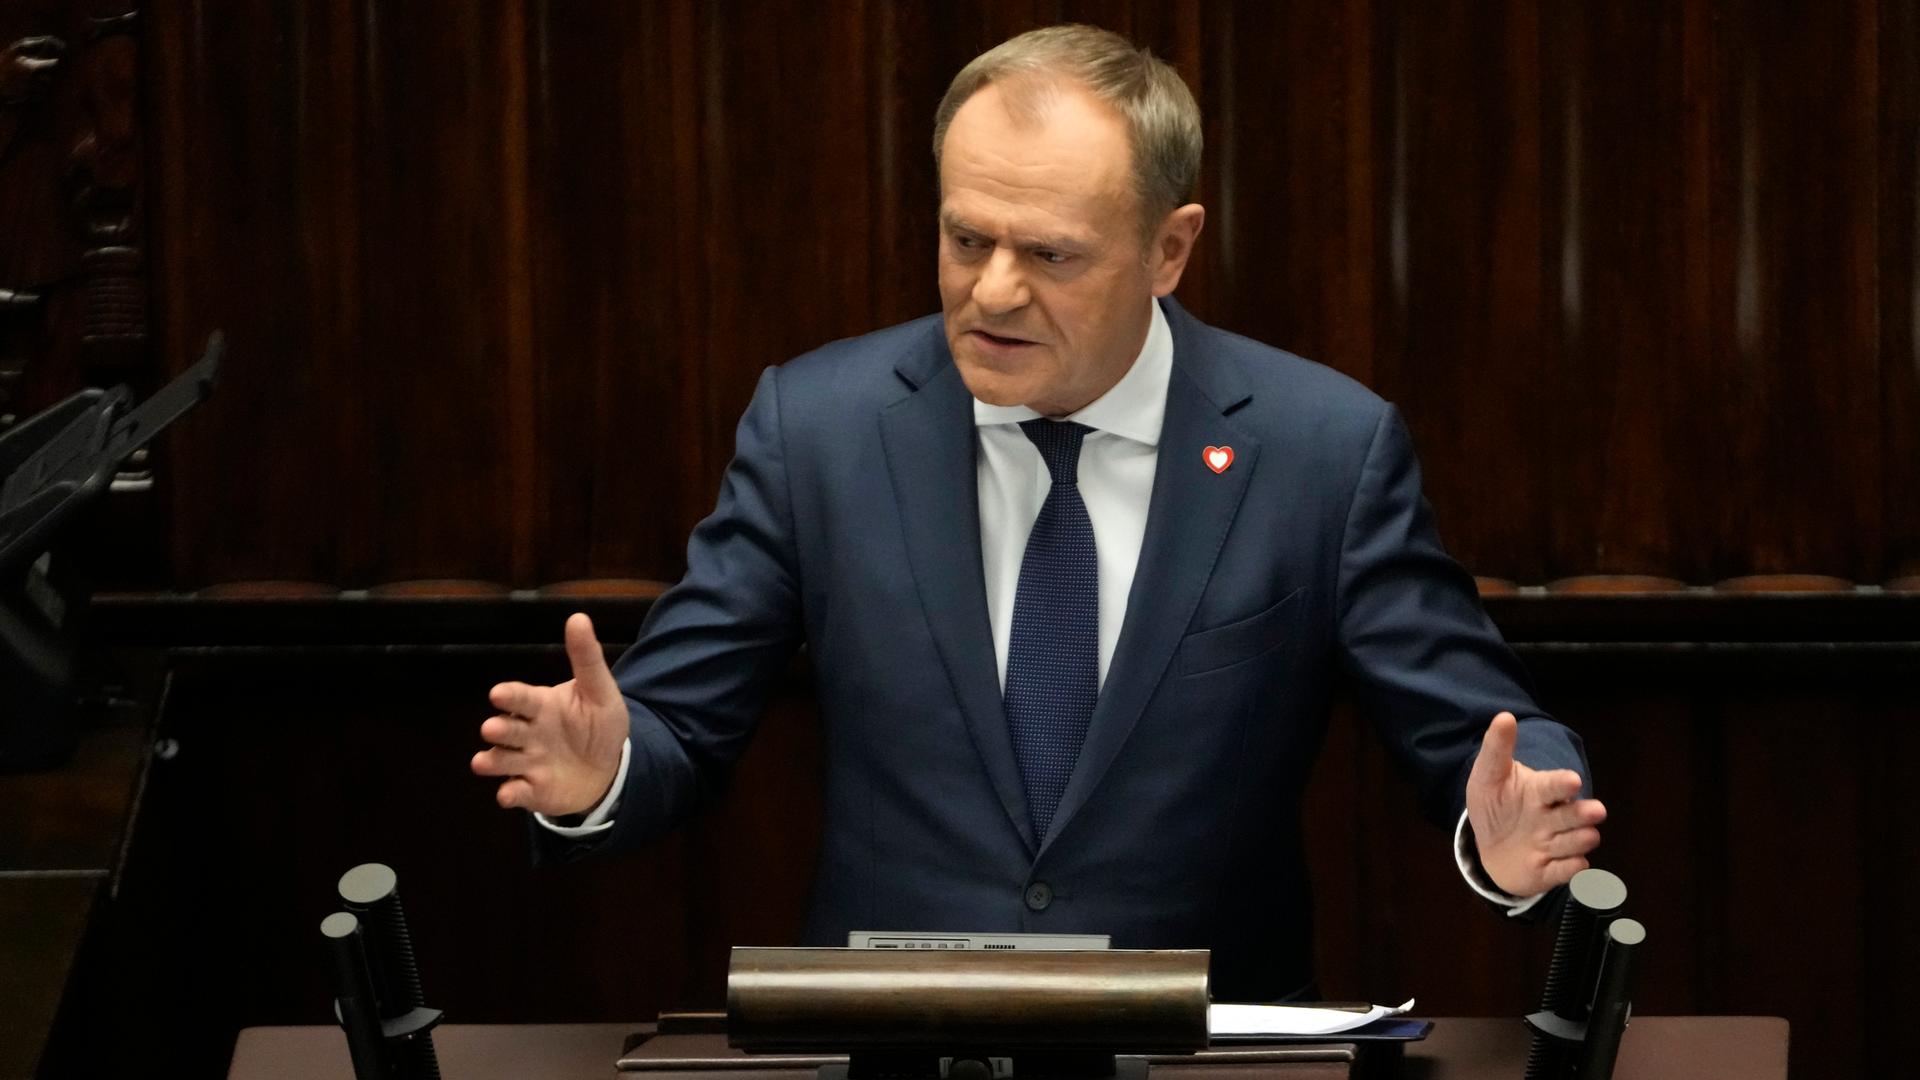 Der polnische Politiker Donald Tusk spricht zu den Abgeordneten während einer Rede im Parlament.